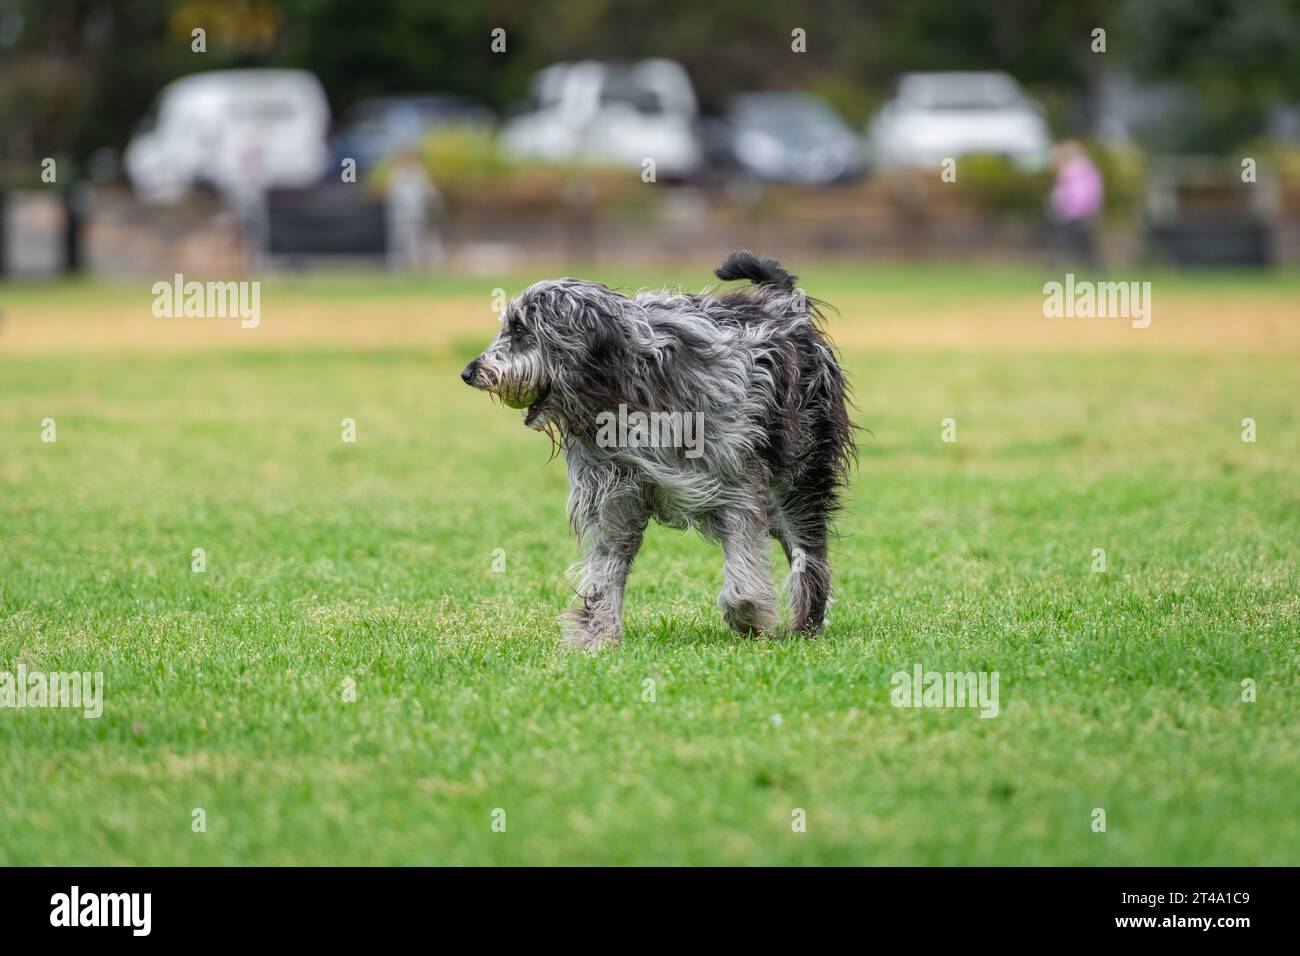 Retrato de un perro esponjoso corriendo en el parque en una hierba verde, foto de perro desaliñado Foto de stock